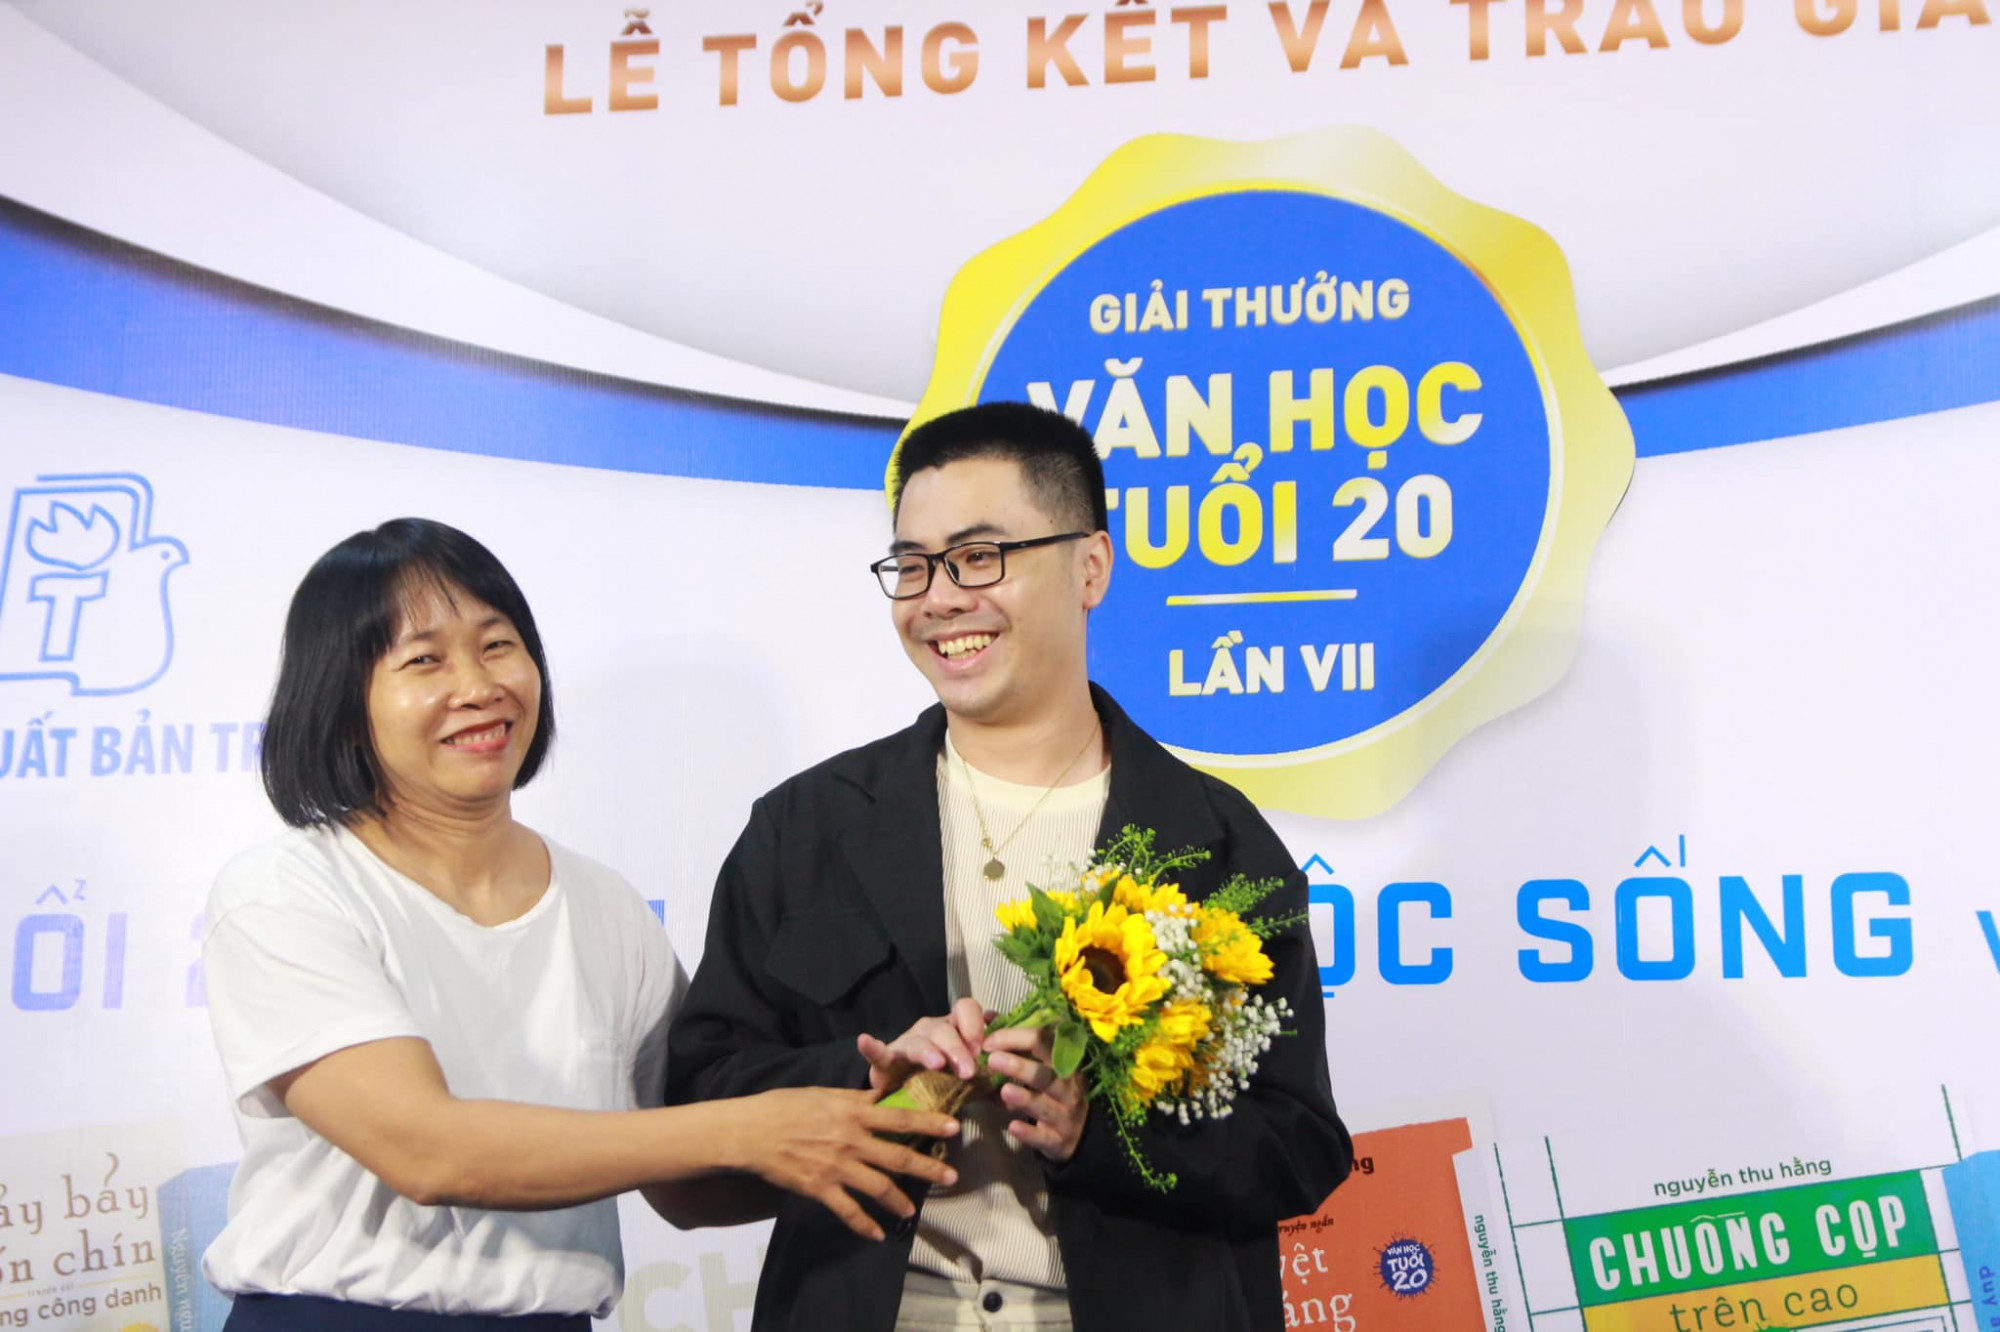 Nhà văn Nguyễn Ngọc Tư trao giải nhì cho tác giả Yang Phan tại lễ trao giải Giải thưởng Văn học Tuổi 20 lần VII